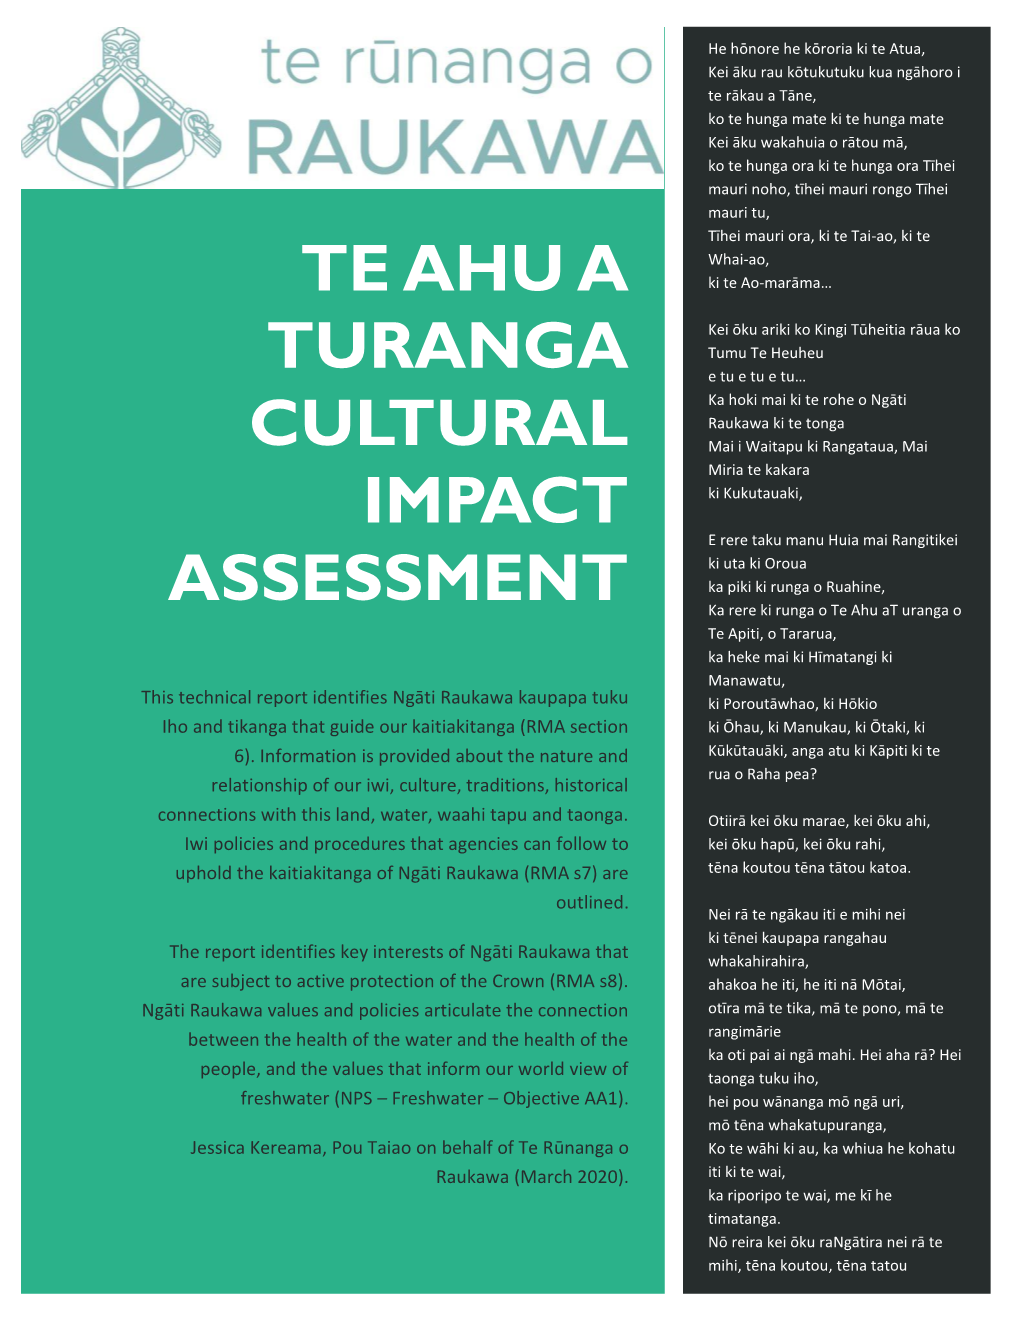 Te Ahu a Turanga Cultural Impact Assessment